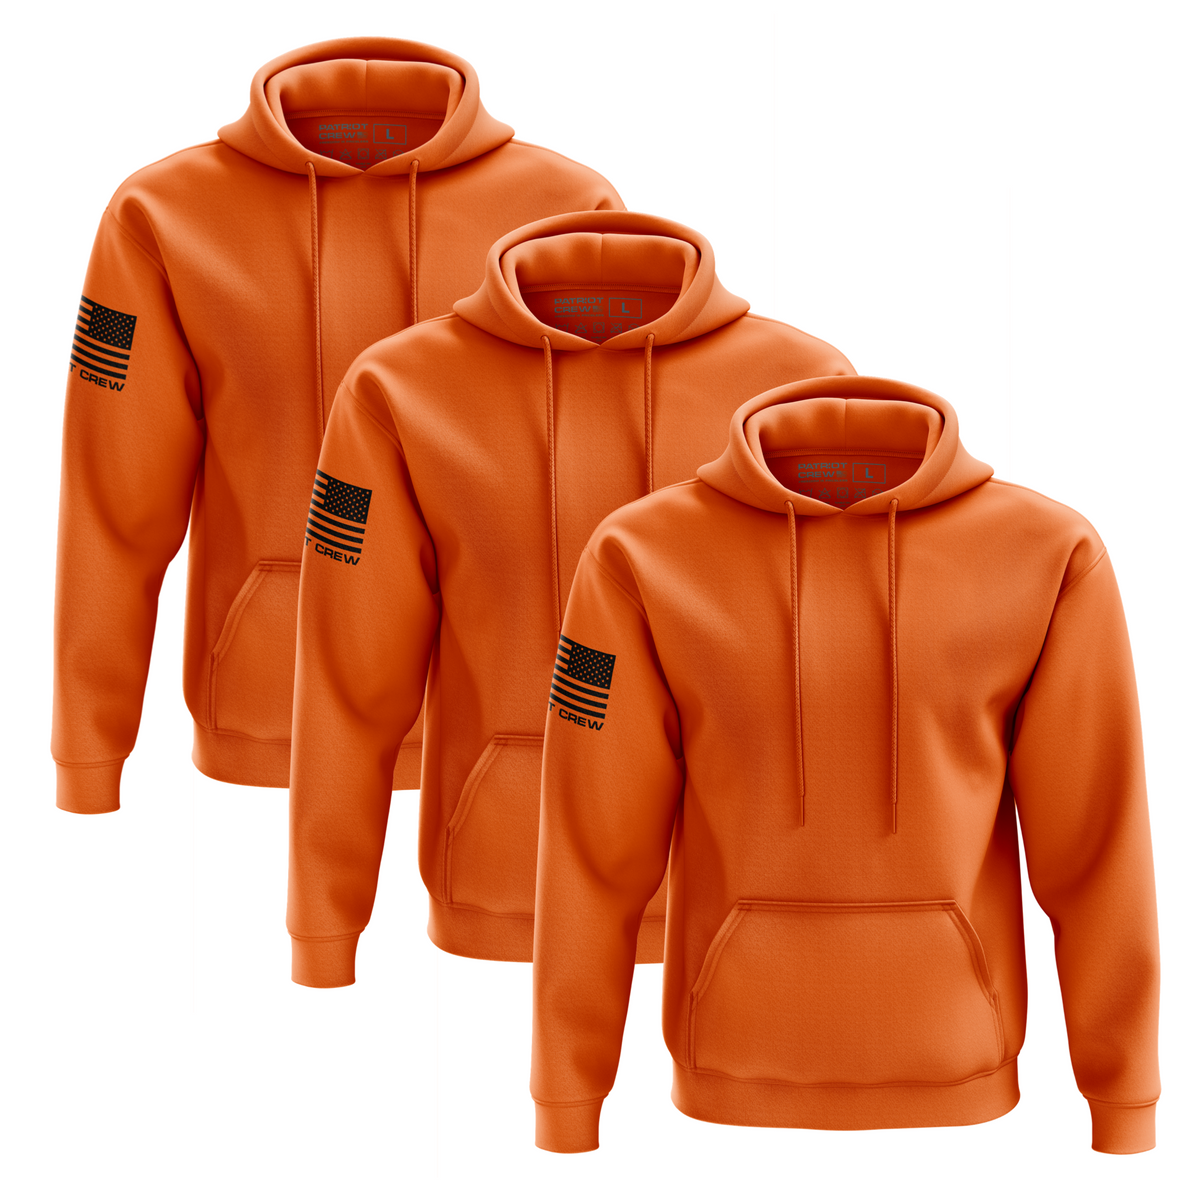 Safety Orange Hoodie (3 Pack)